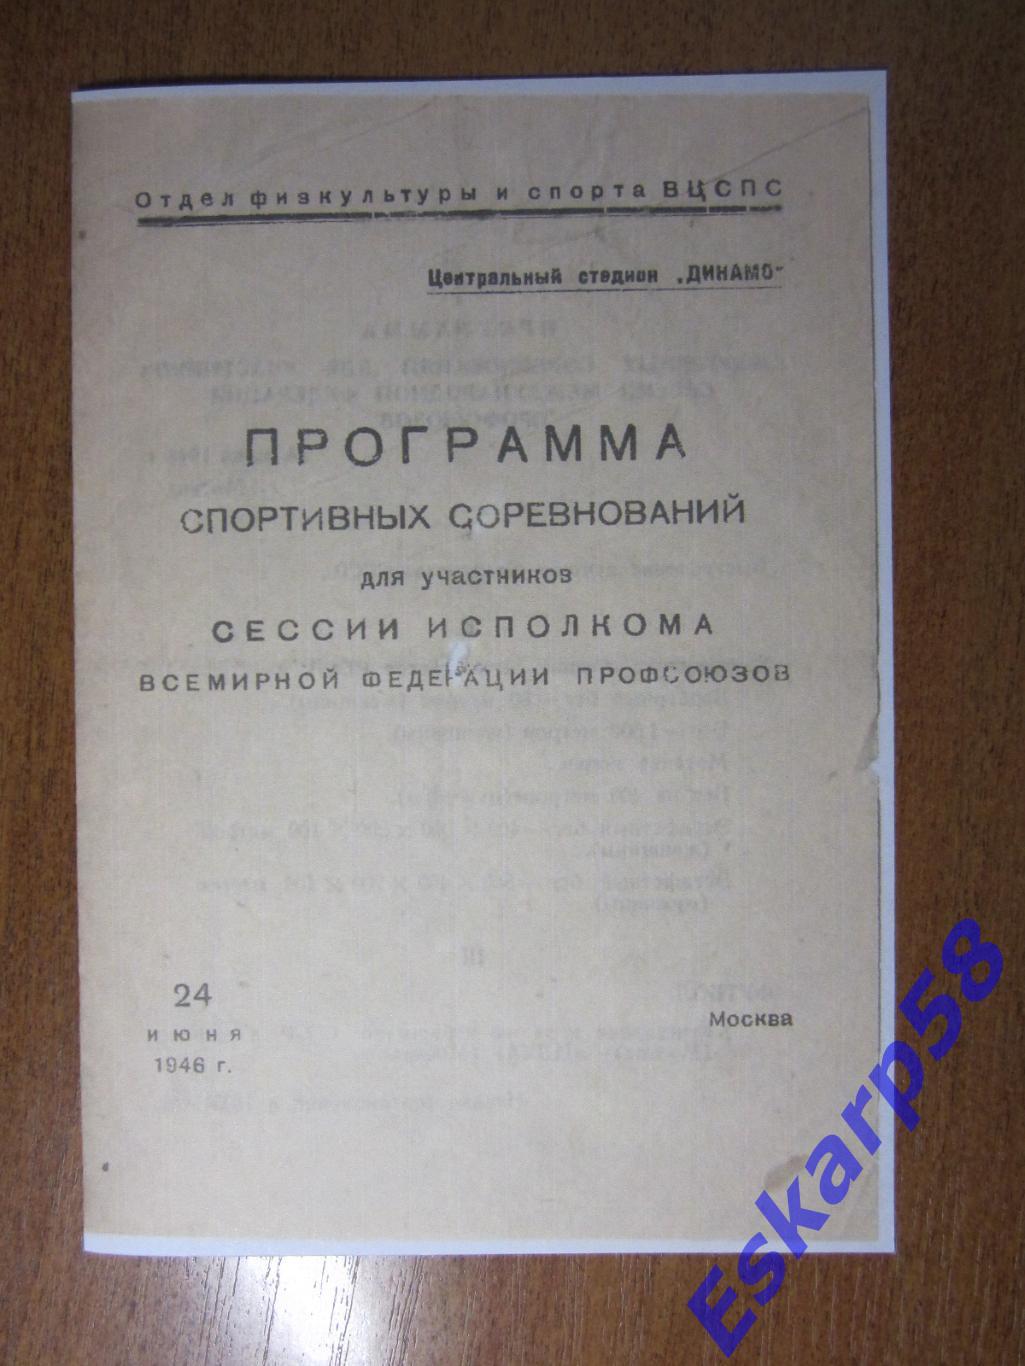 1946.Торпедо. Москва - ЦДКА.24.06